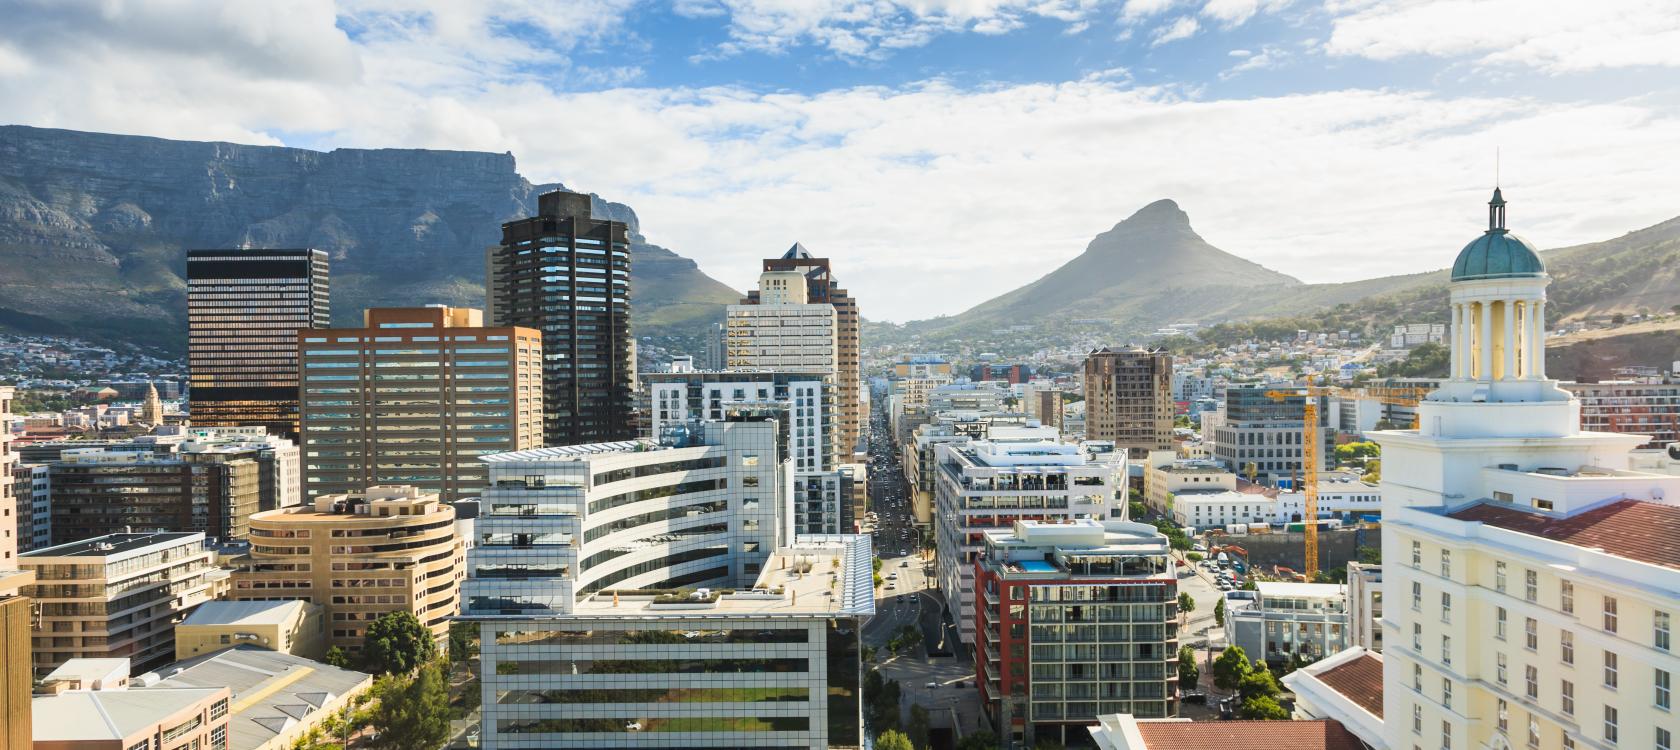 En Afrique du Sud, Proparco et Investec s’associent pour accroître les investissements en faveur du climat